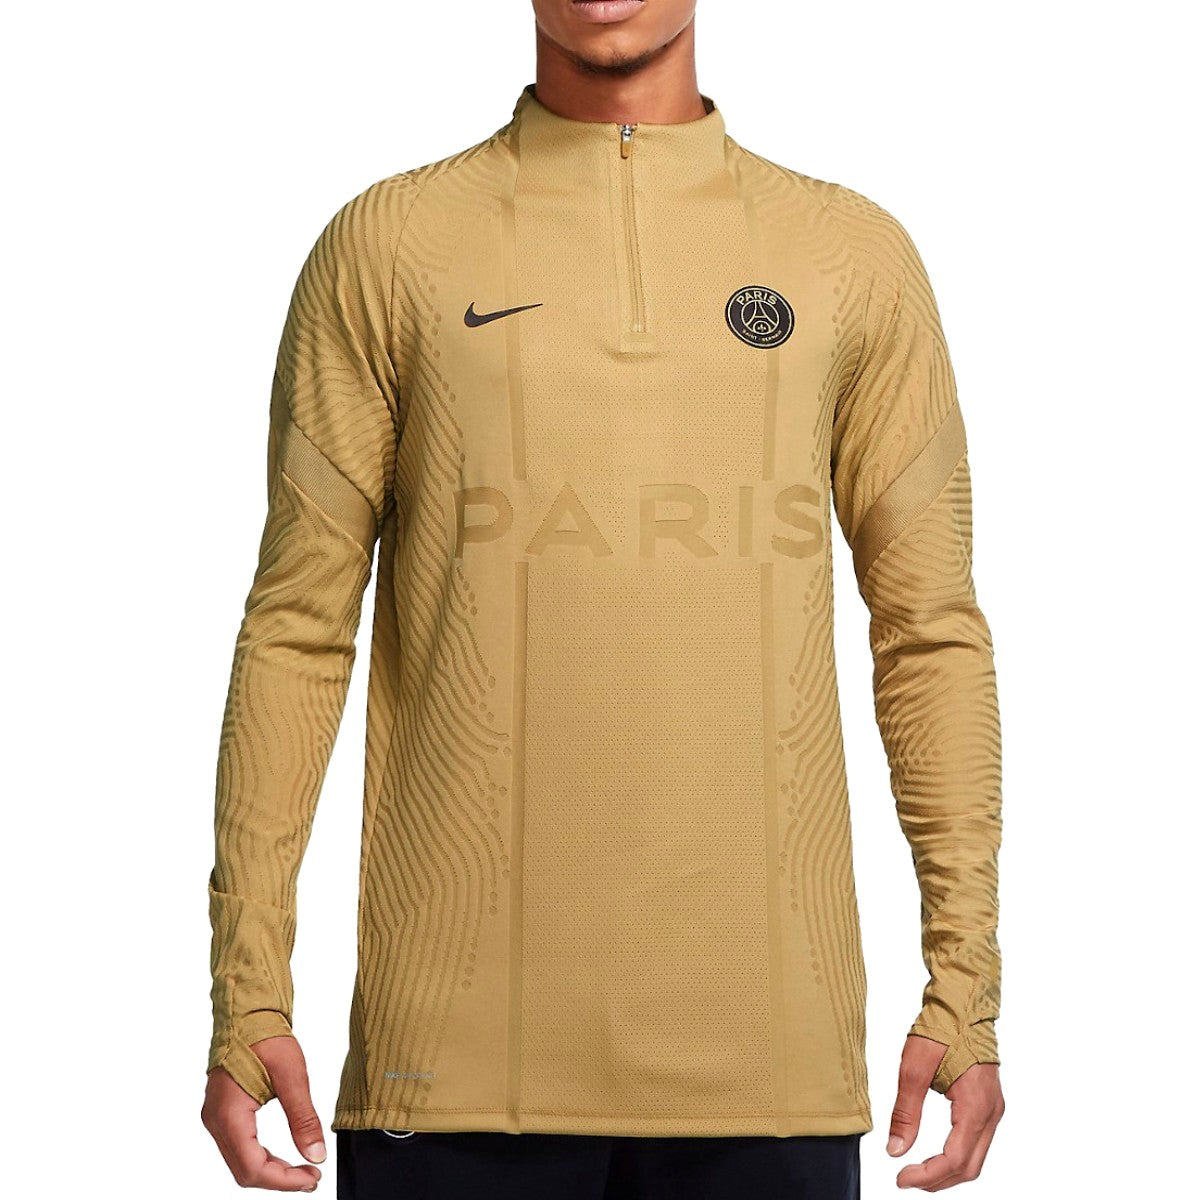 Incarijk verkouden worden soort Paris Saint Germain Vaporknit technical sweat top 2021 - Nike –  SoccerTracksuits.com